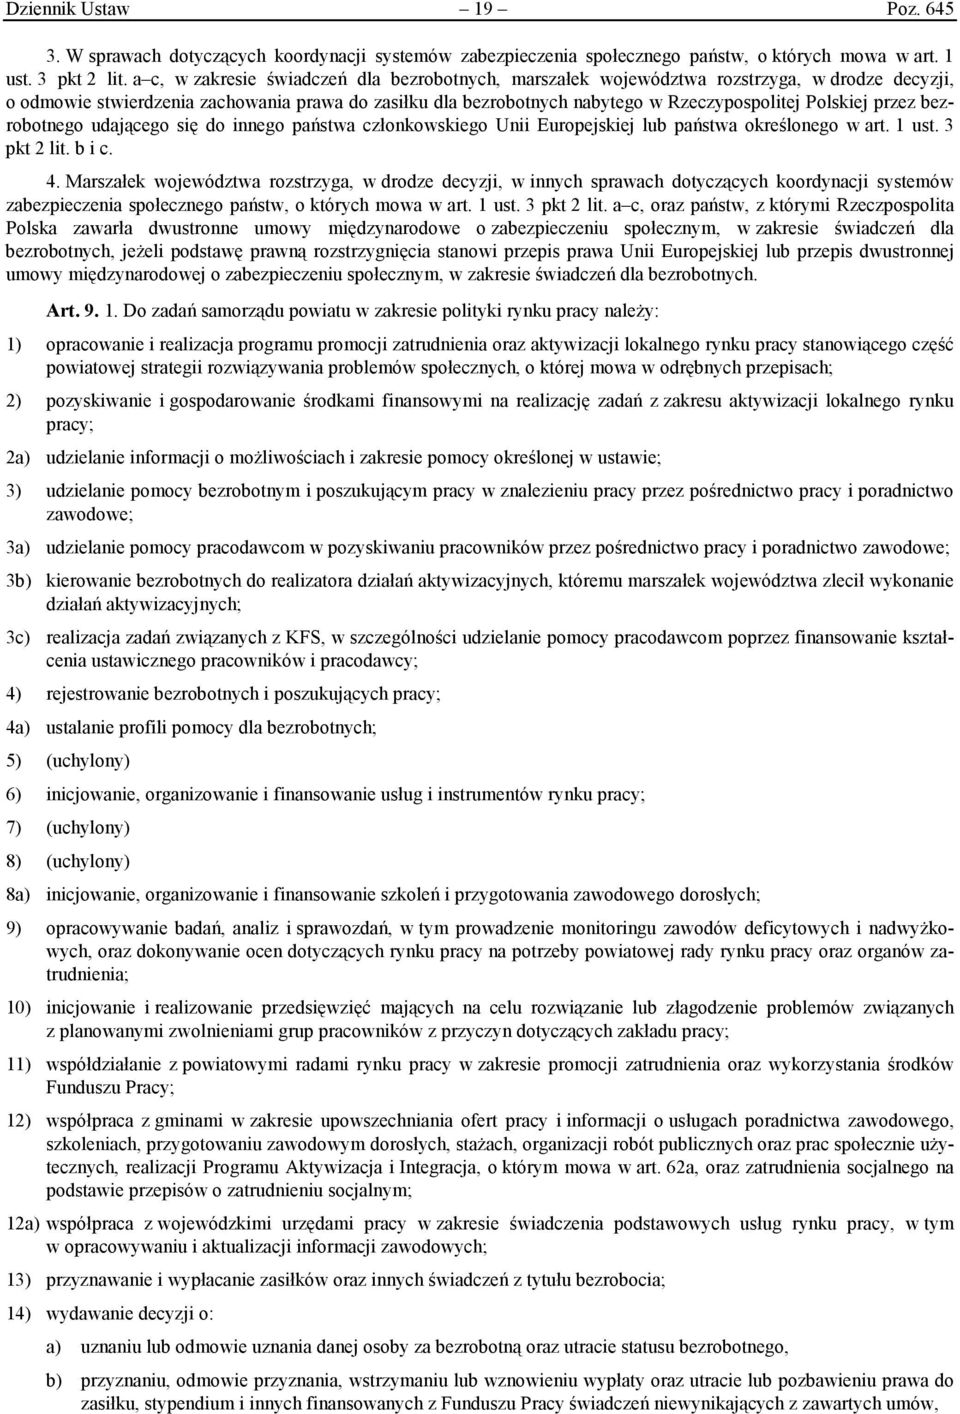 Polskiej przez bezrobotnego udającego się do innego państwa członkowskiego Unii Europejskiej lub państwa określonego w art. 1 ust. 3 pkt 2 lit. b i c. 4.